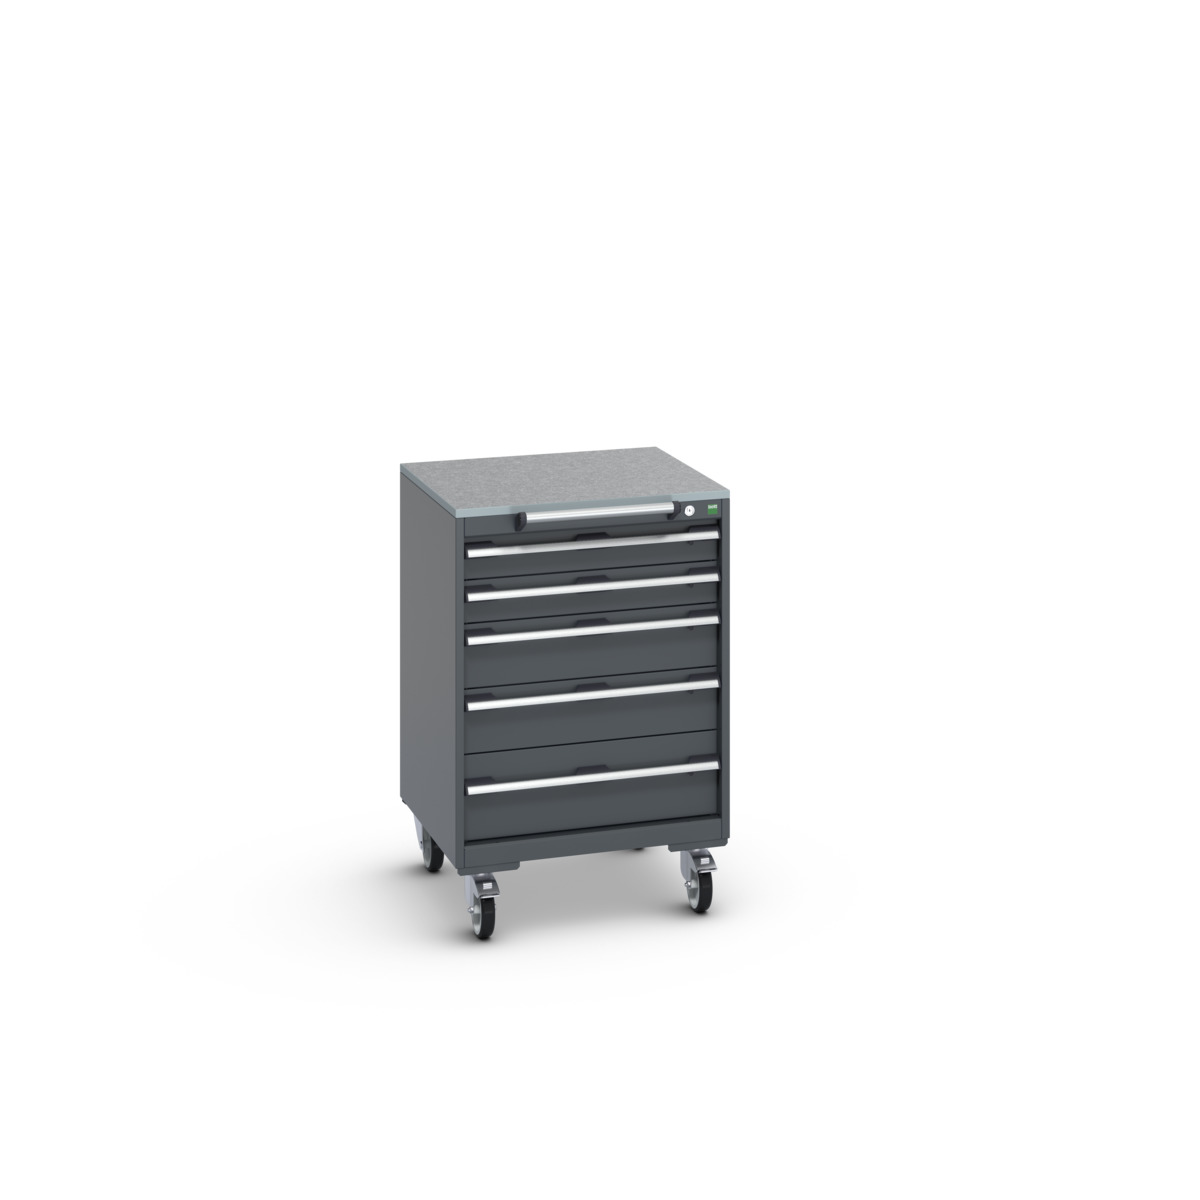 40402150.77V - cubio mobile cabinet